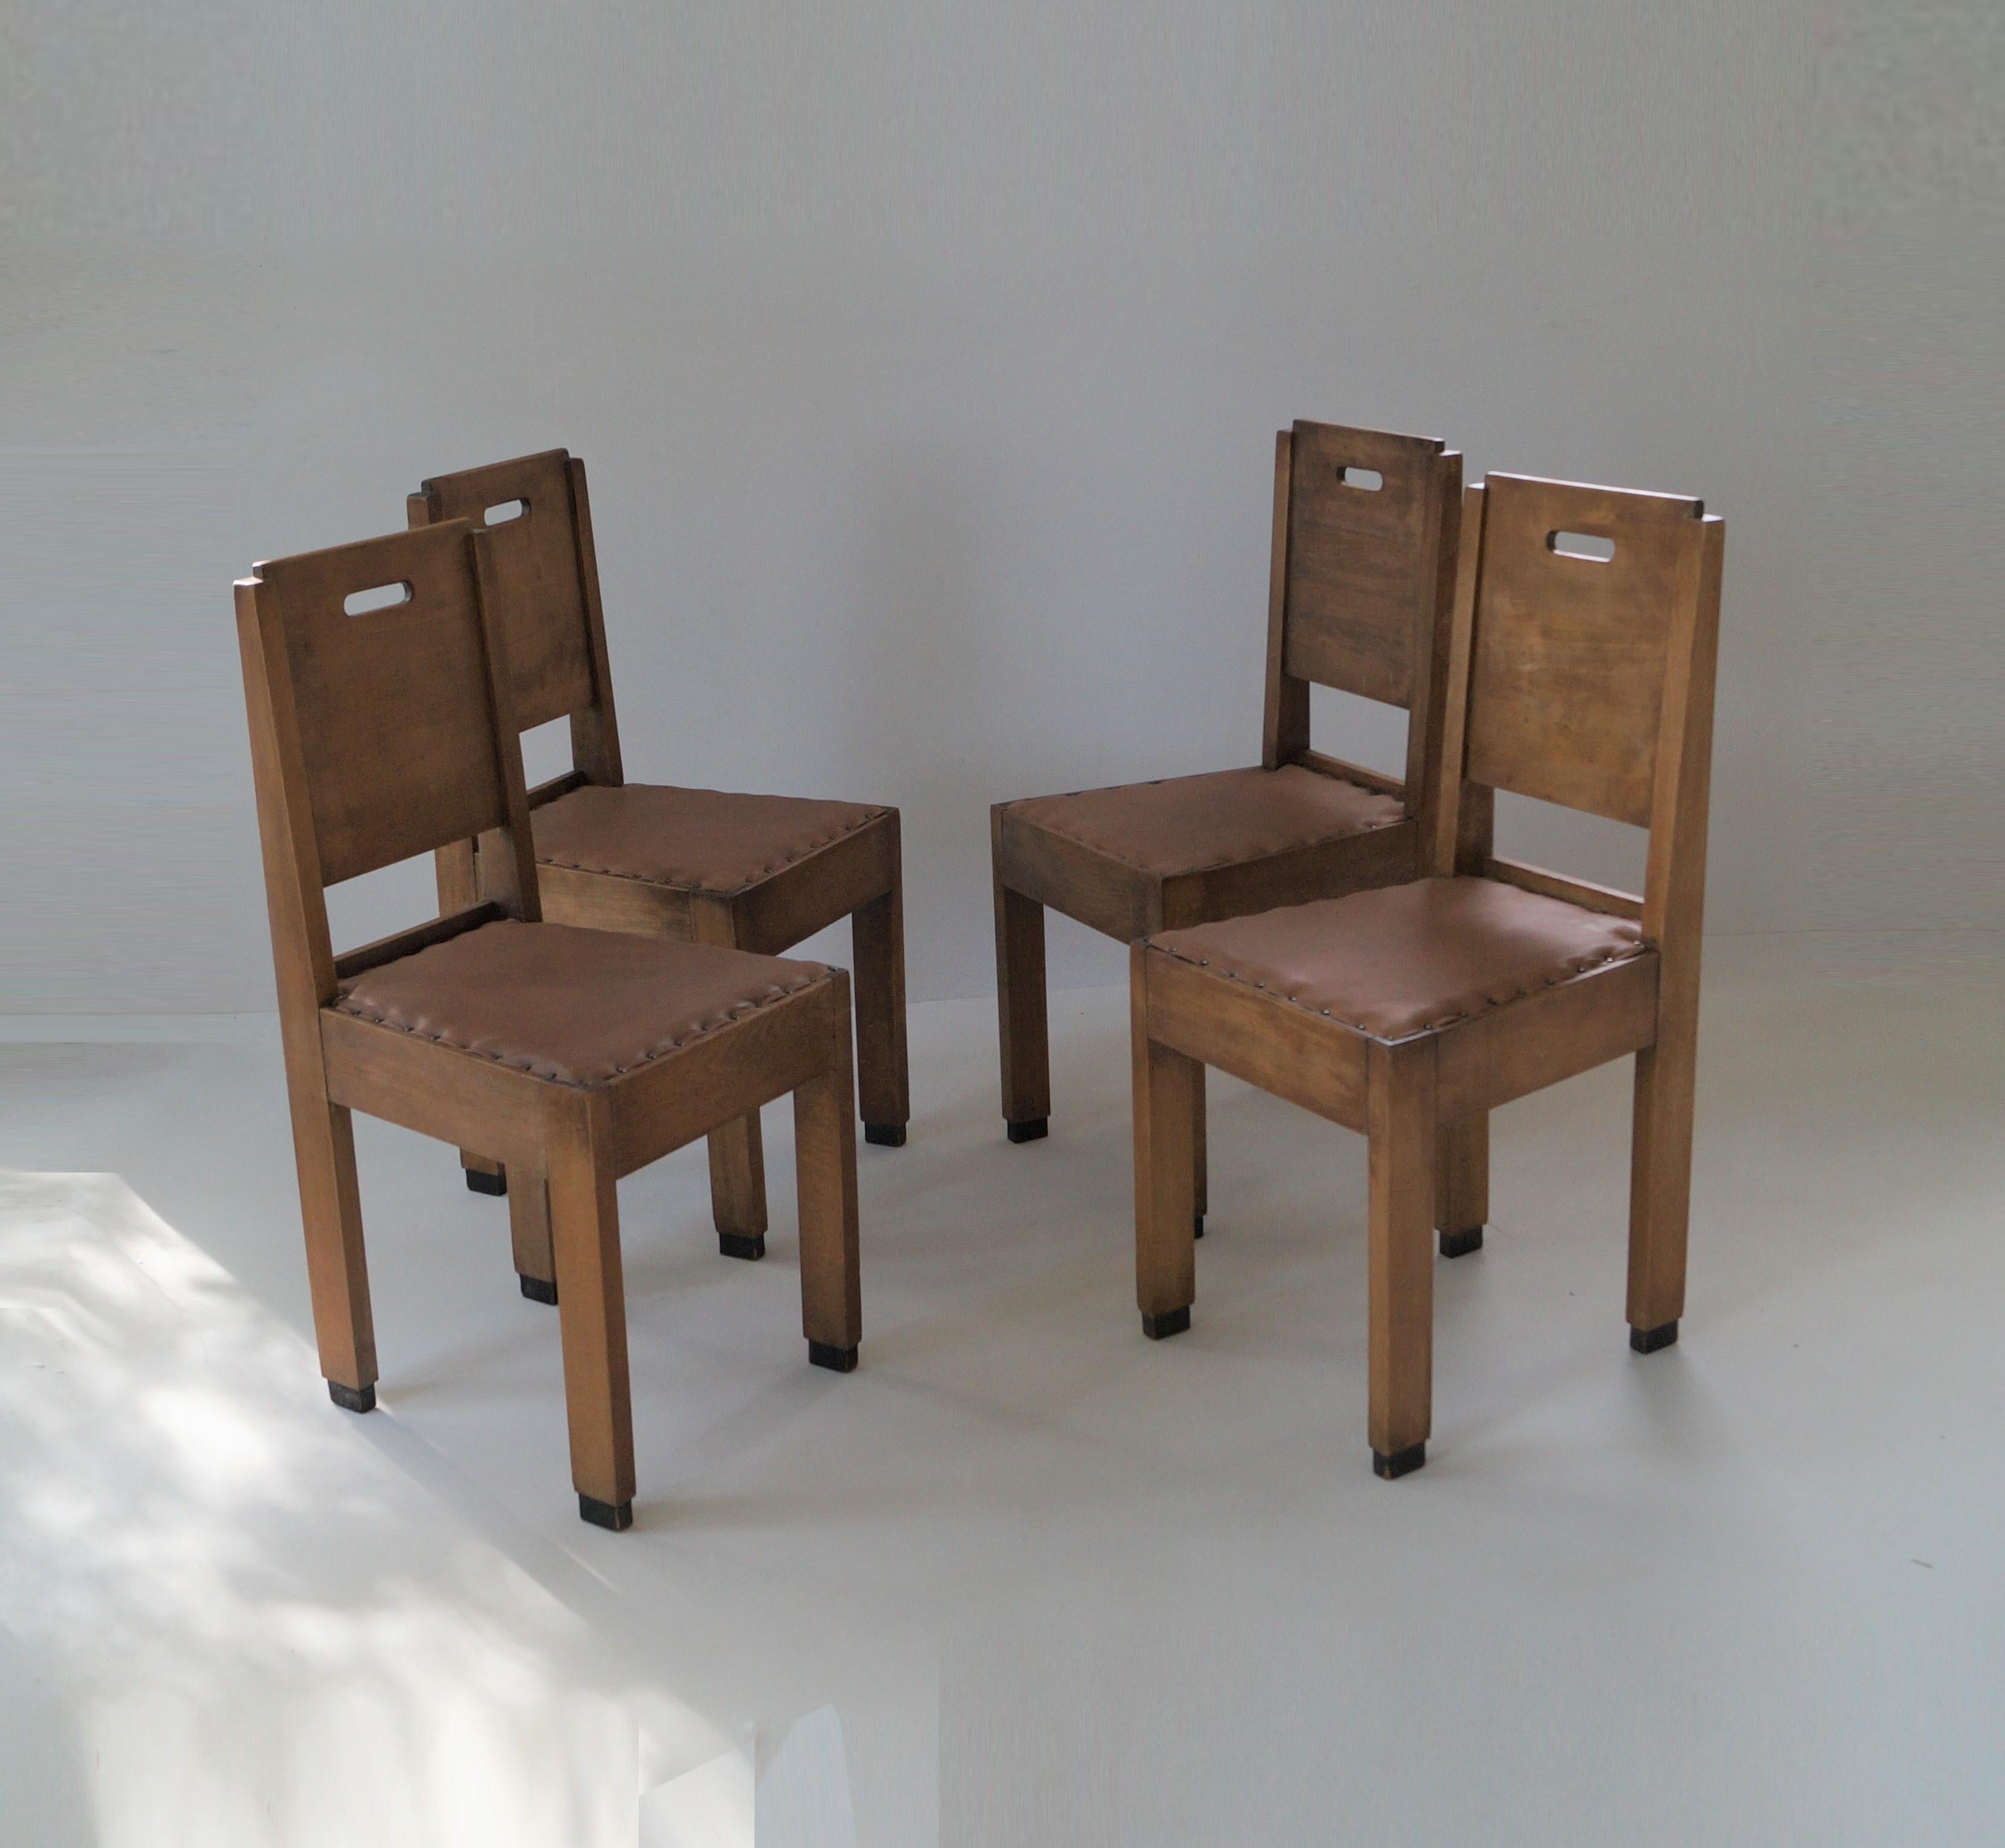 Ensemble unique de quatre chaises de salle à manger du début (vers 1910-1920) de l'école de Haagse avec des influences de De Stijl. Design/One très austère et fonctionnel avec des lignes épurées et des évidements de forme ovale qui font office de